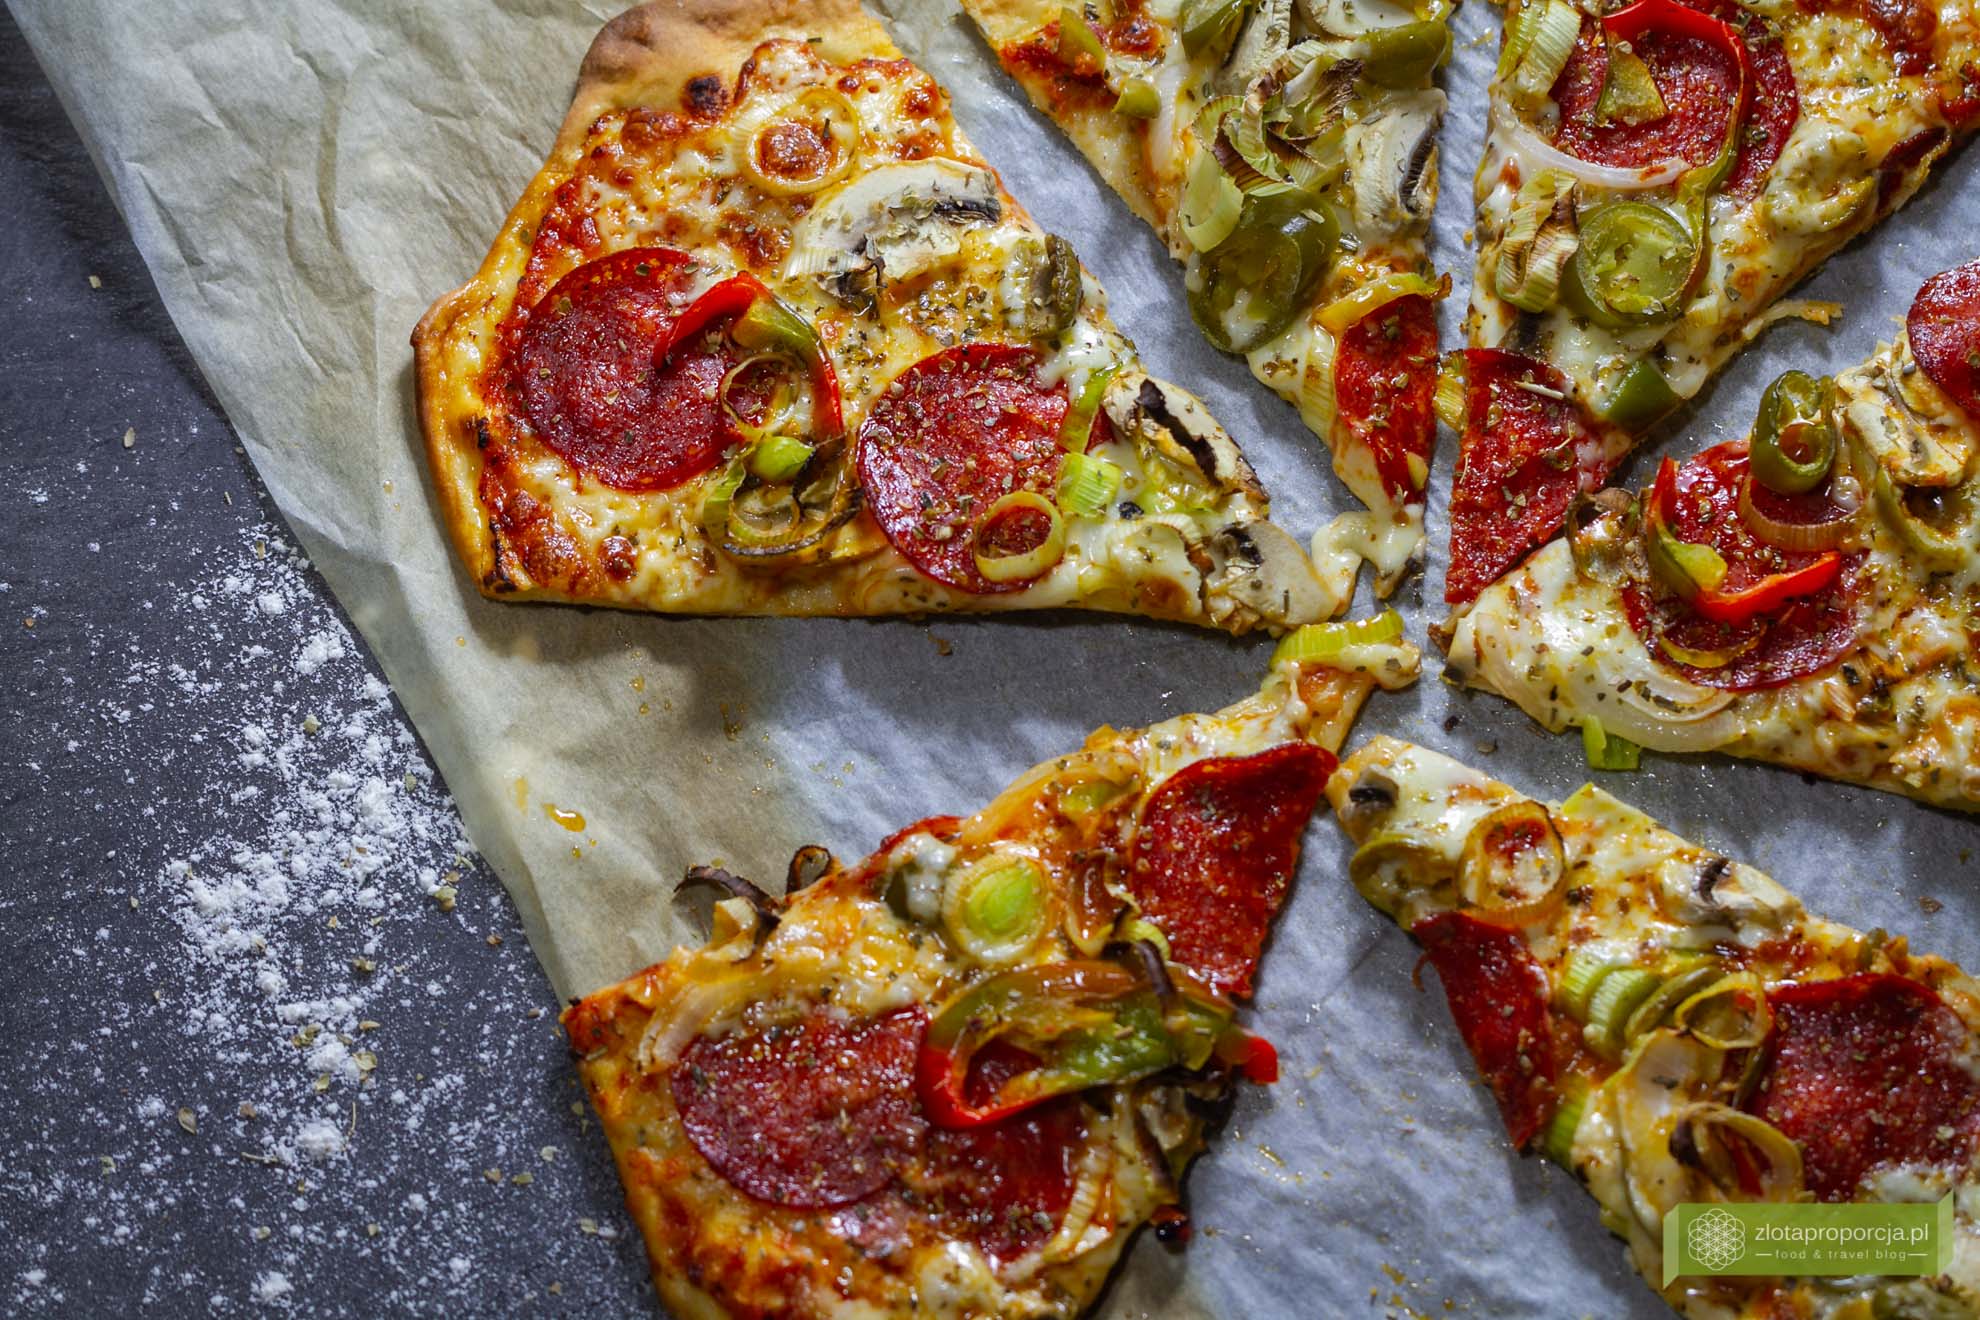 Вынув пиццу из духовки, посыпьте ее орегано и начните настоящий итальянский праздник 🙂